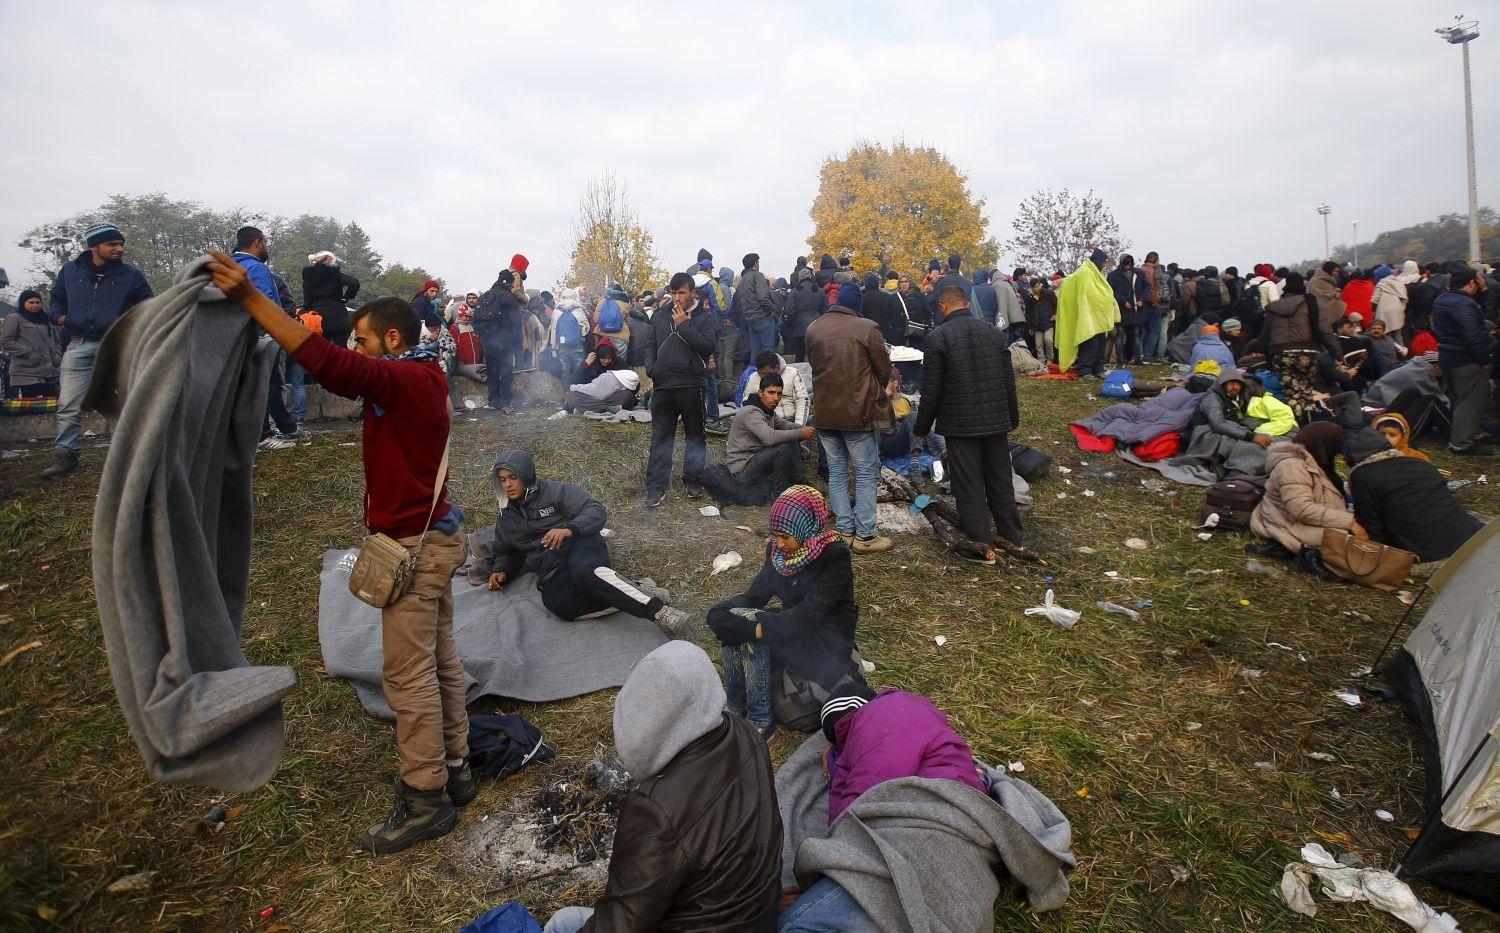 Rögtönzött menekülttábor Sentiljben, Szlovénia határánál: humanitárius katasztrófa fenyeget